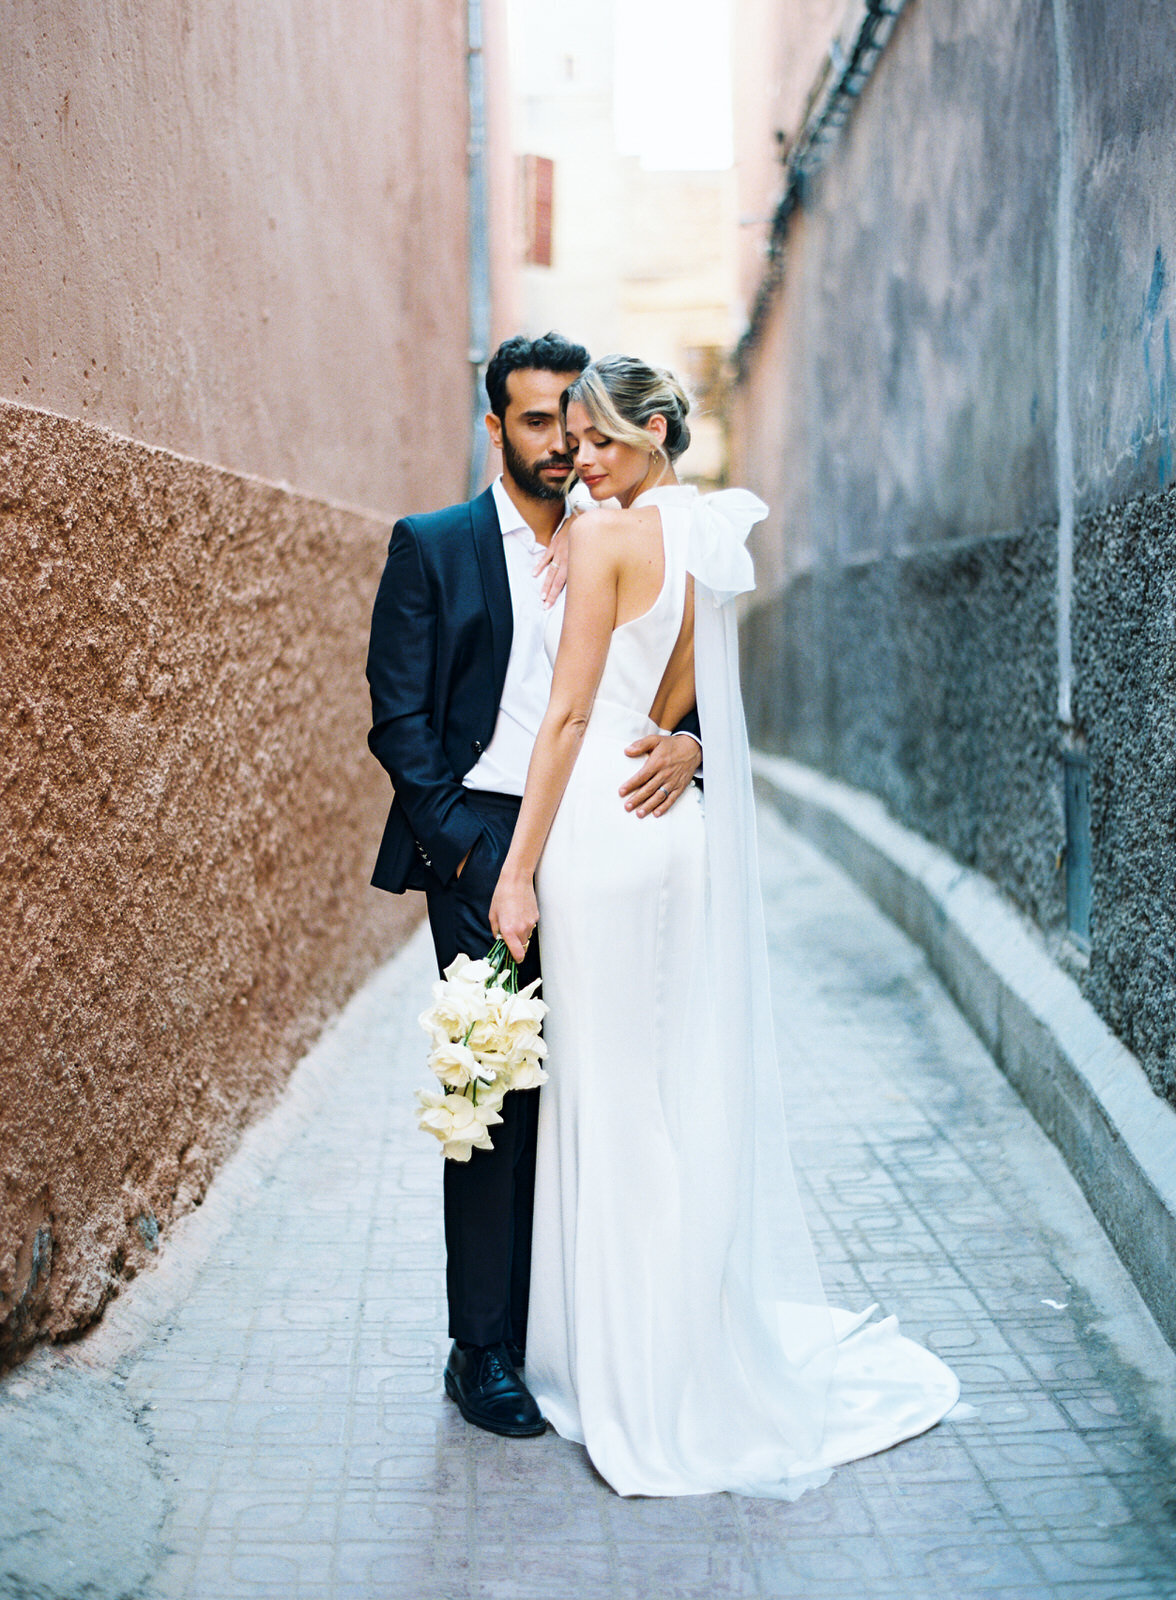 Stylish Modern Wedding Editorial in Marrakech23